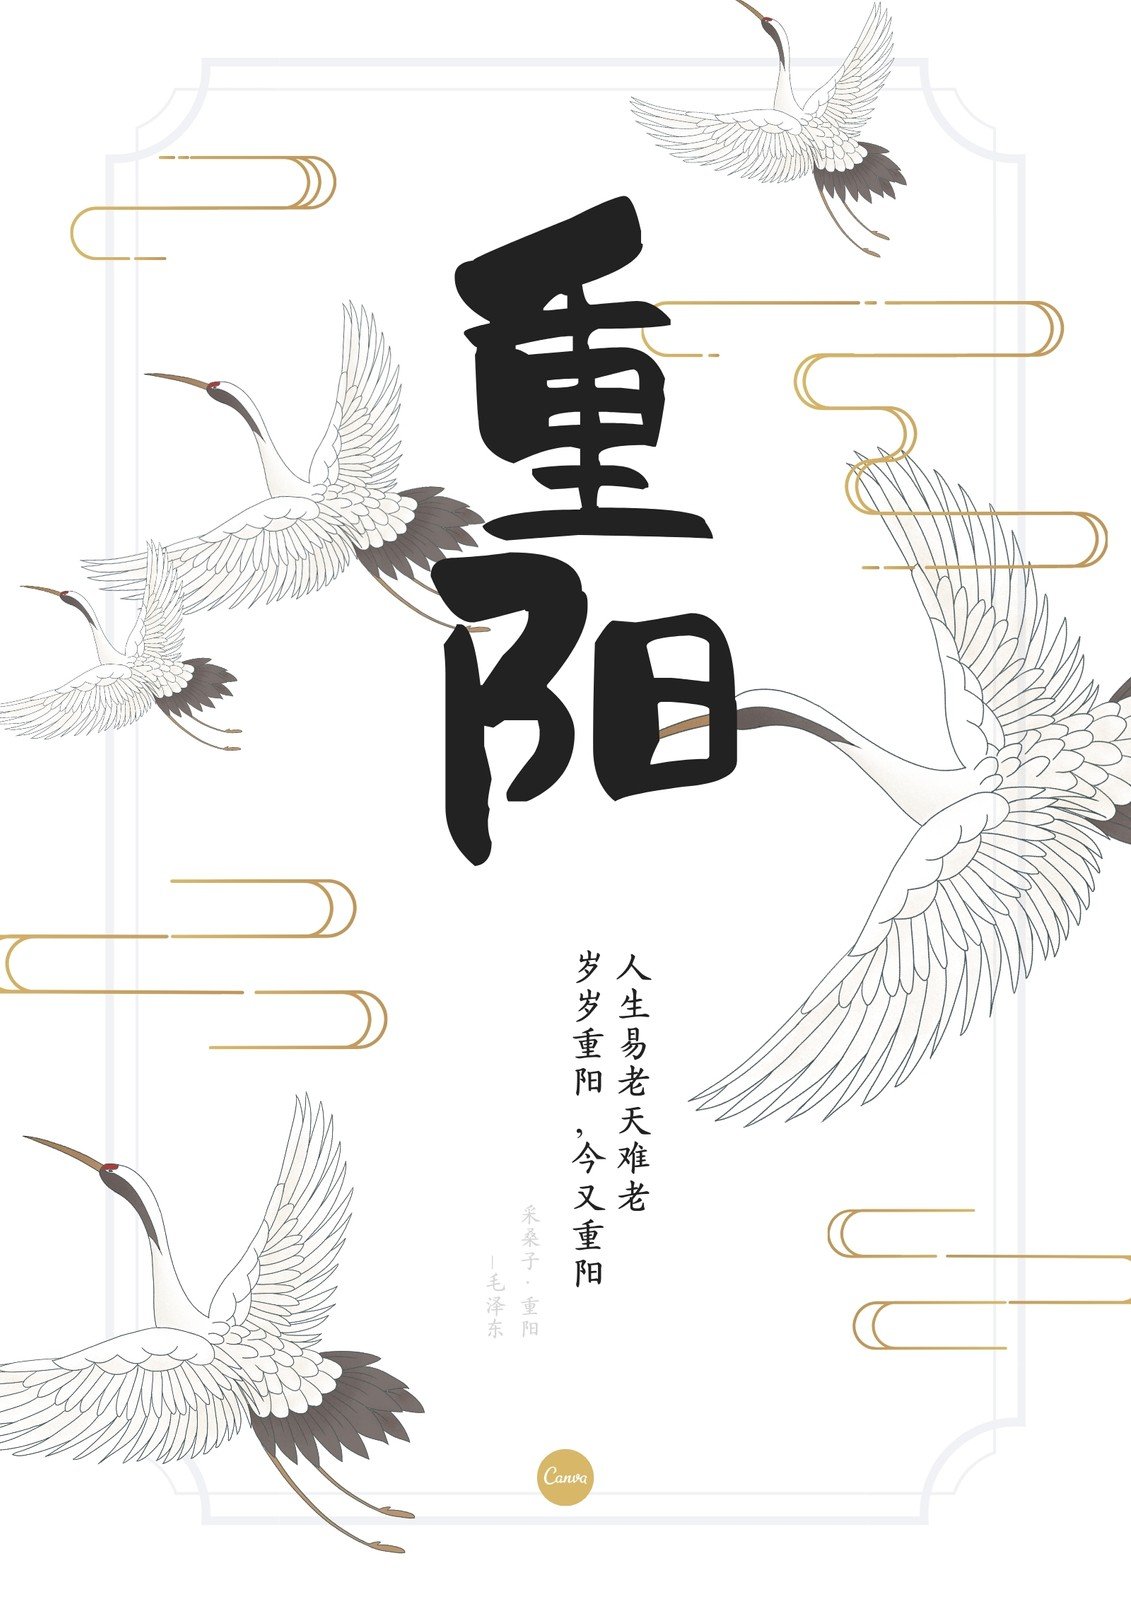 黑白色仙鹤手绘重阳节节日宣传中文海报